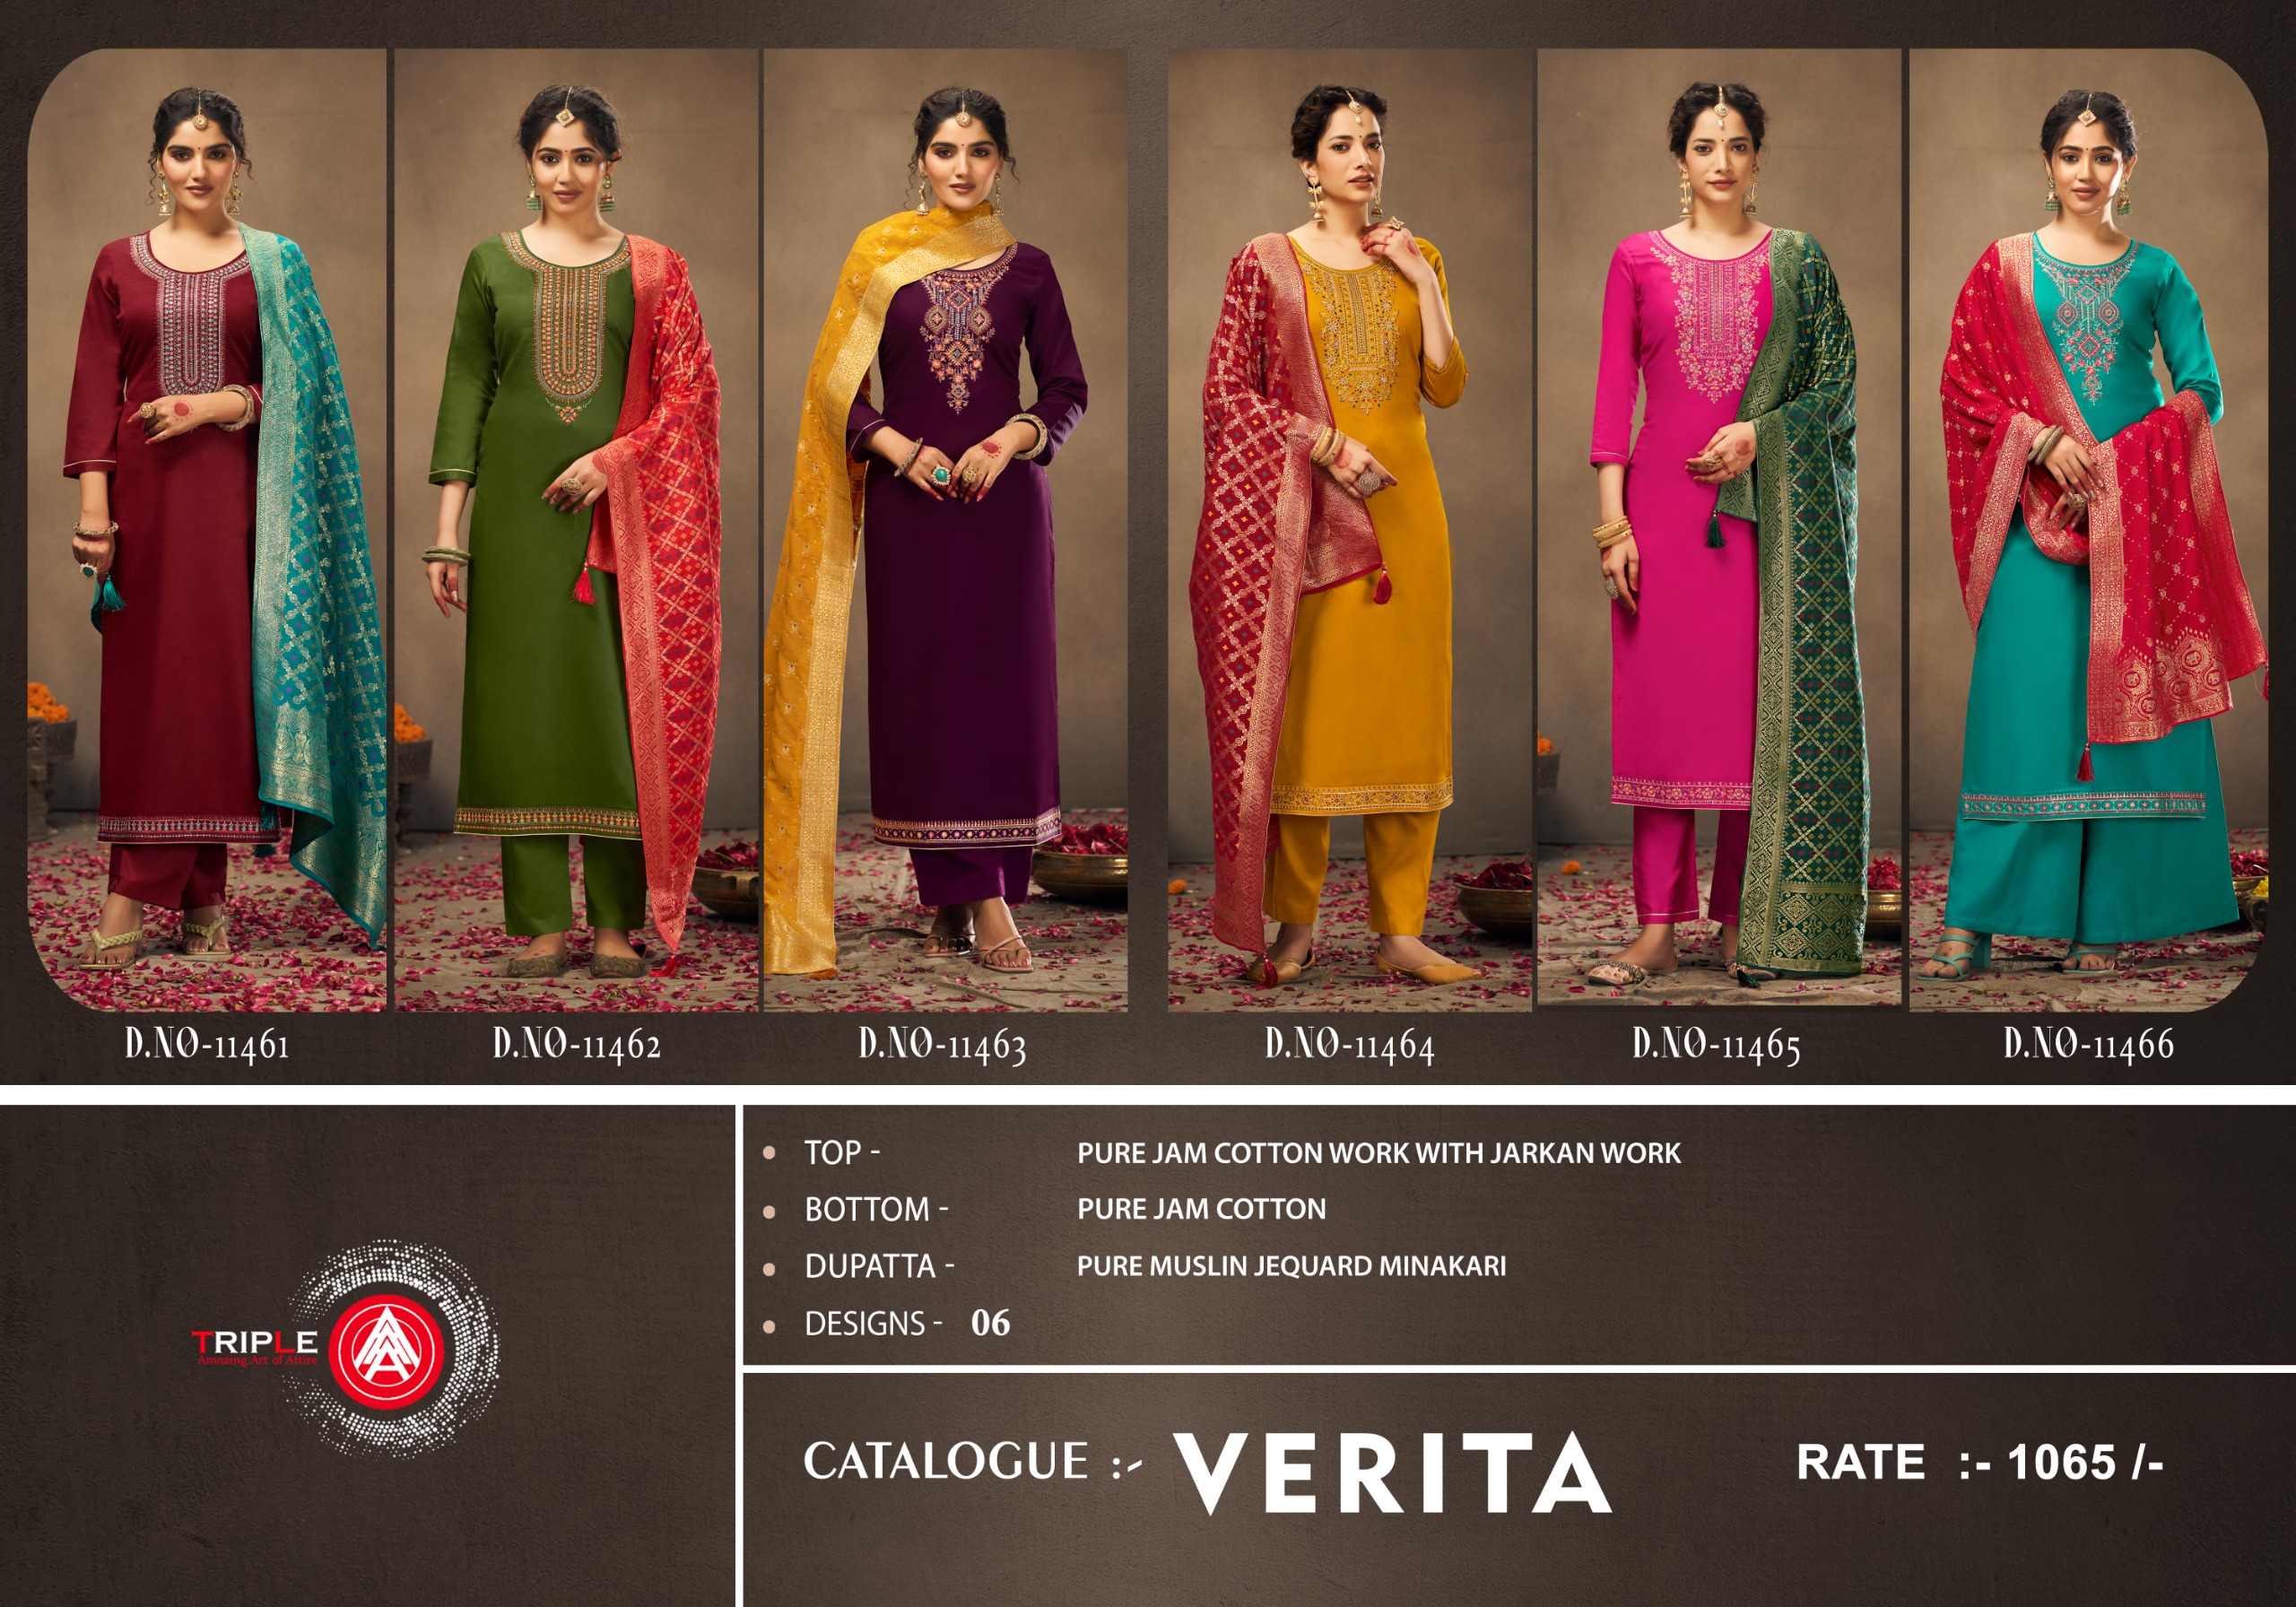 Triple Aaa Verita collection 1